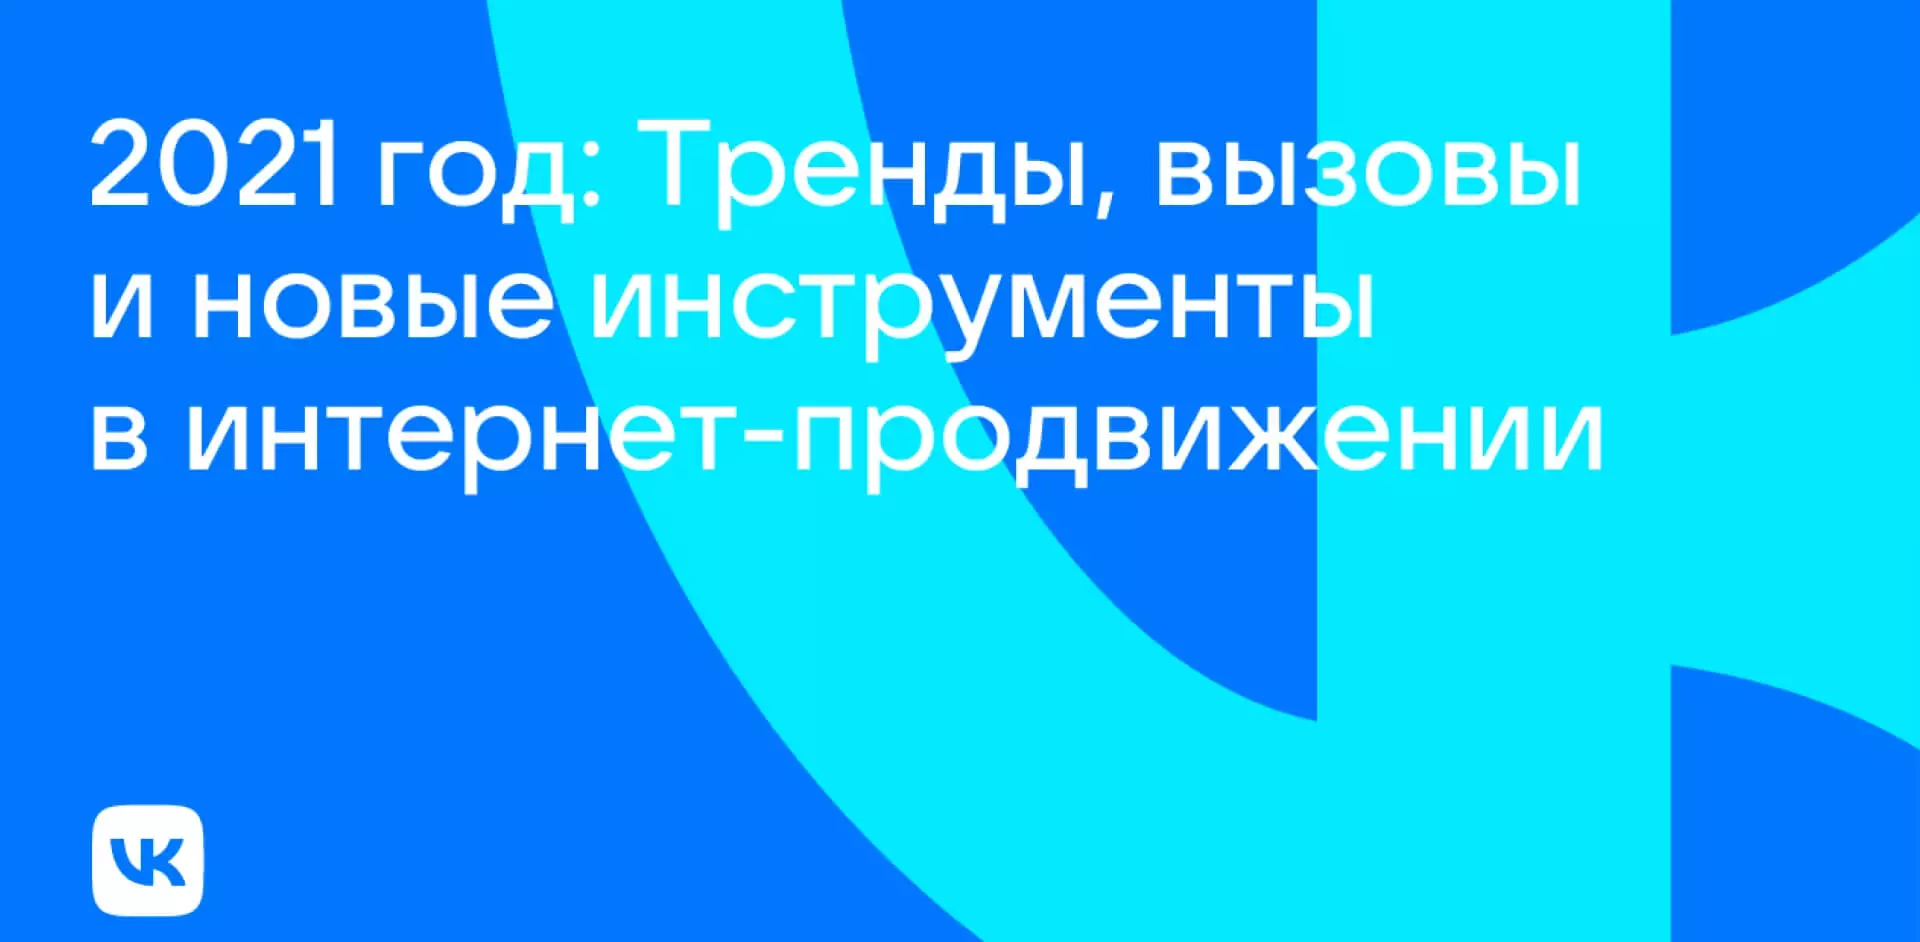 Три инструмента продвижения в сервисах VK, которые стоит использовать сейчас – совет «ВКонтакте» 